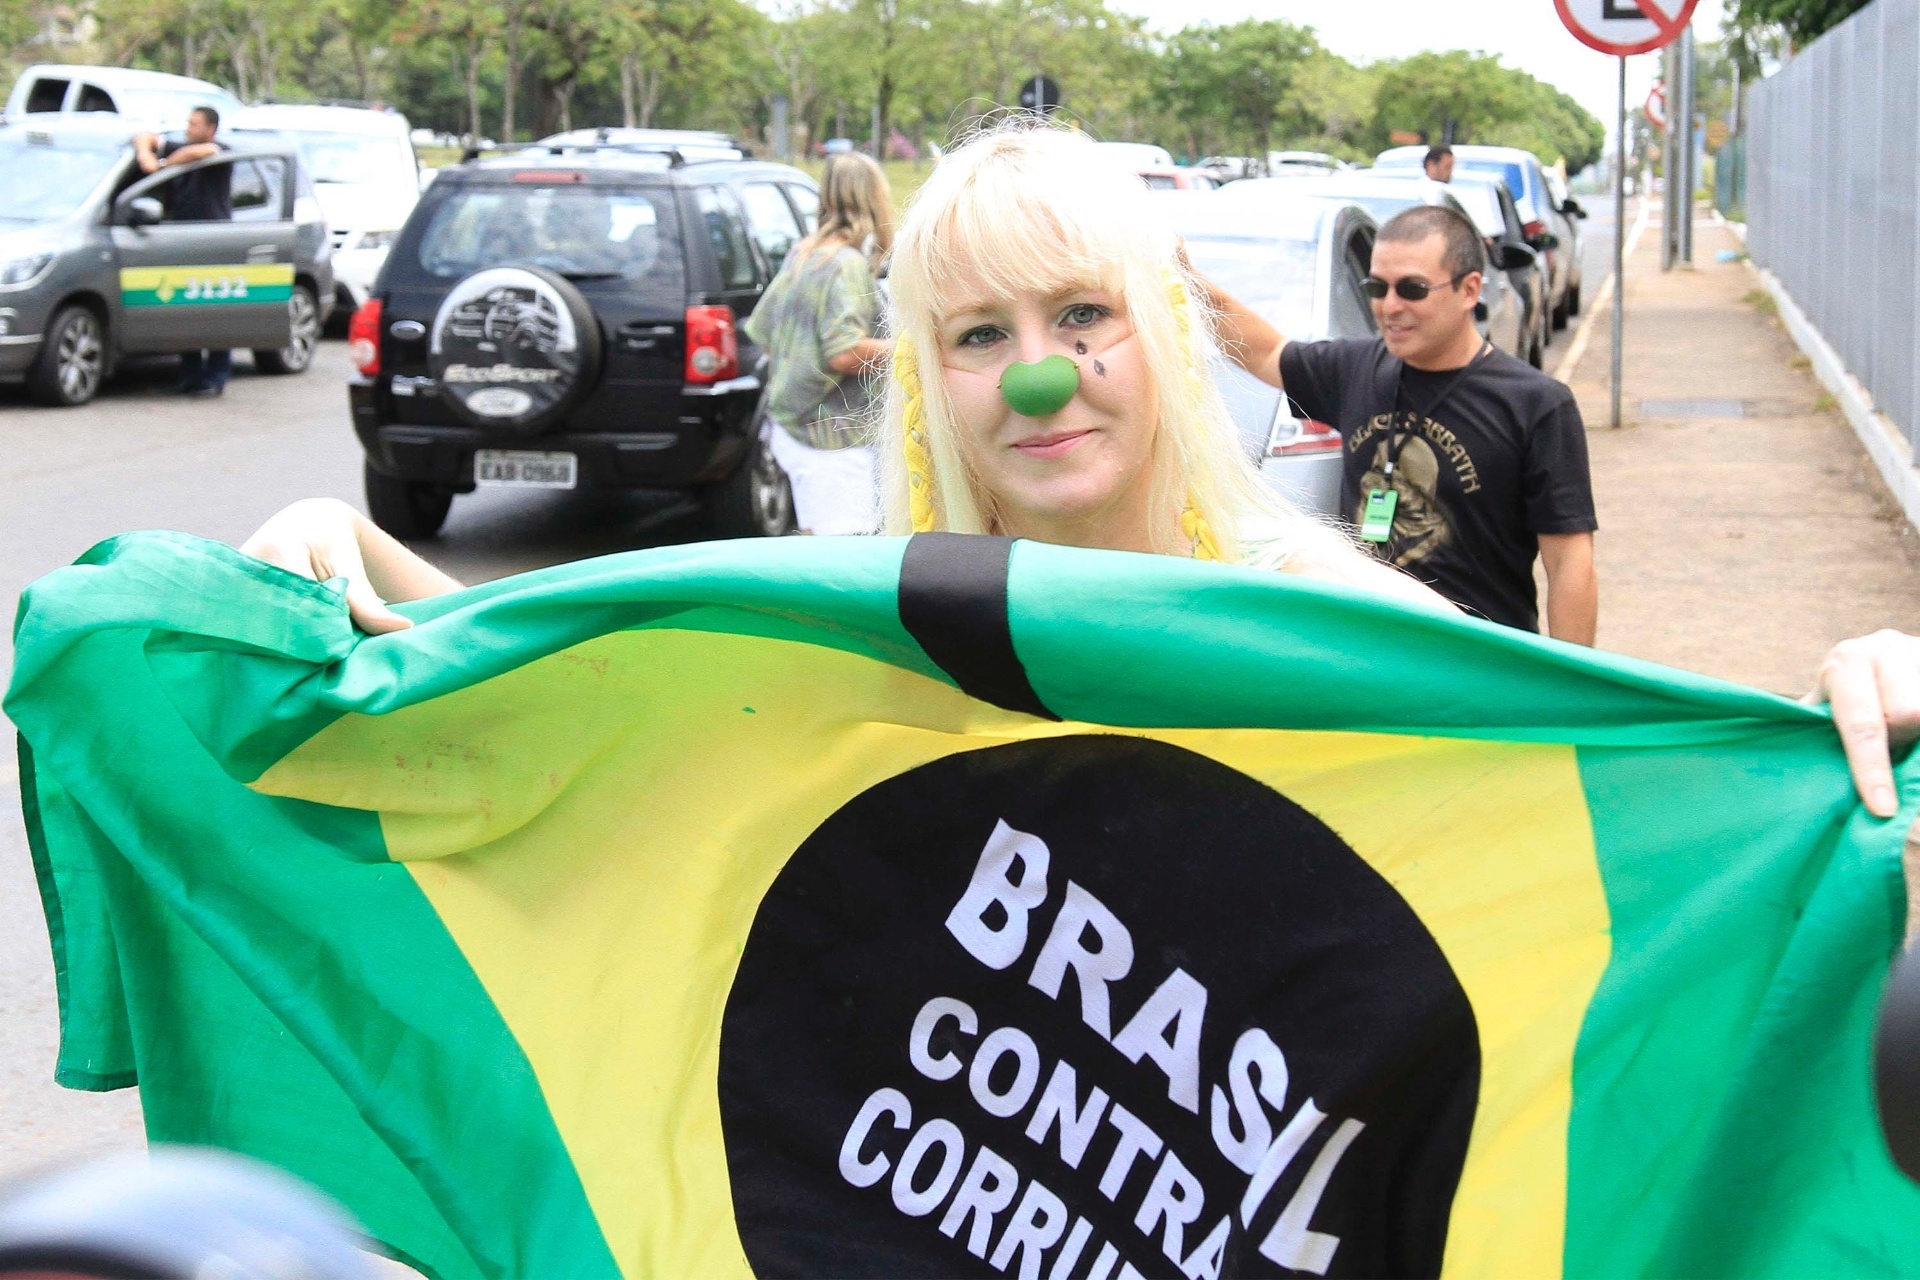 26.out.2014 - Eleitora protesta contra corrupção em frente à escola em Brasília, no Distrito Federal, neste domingo (26)